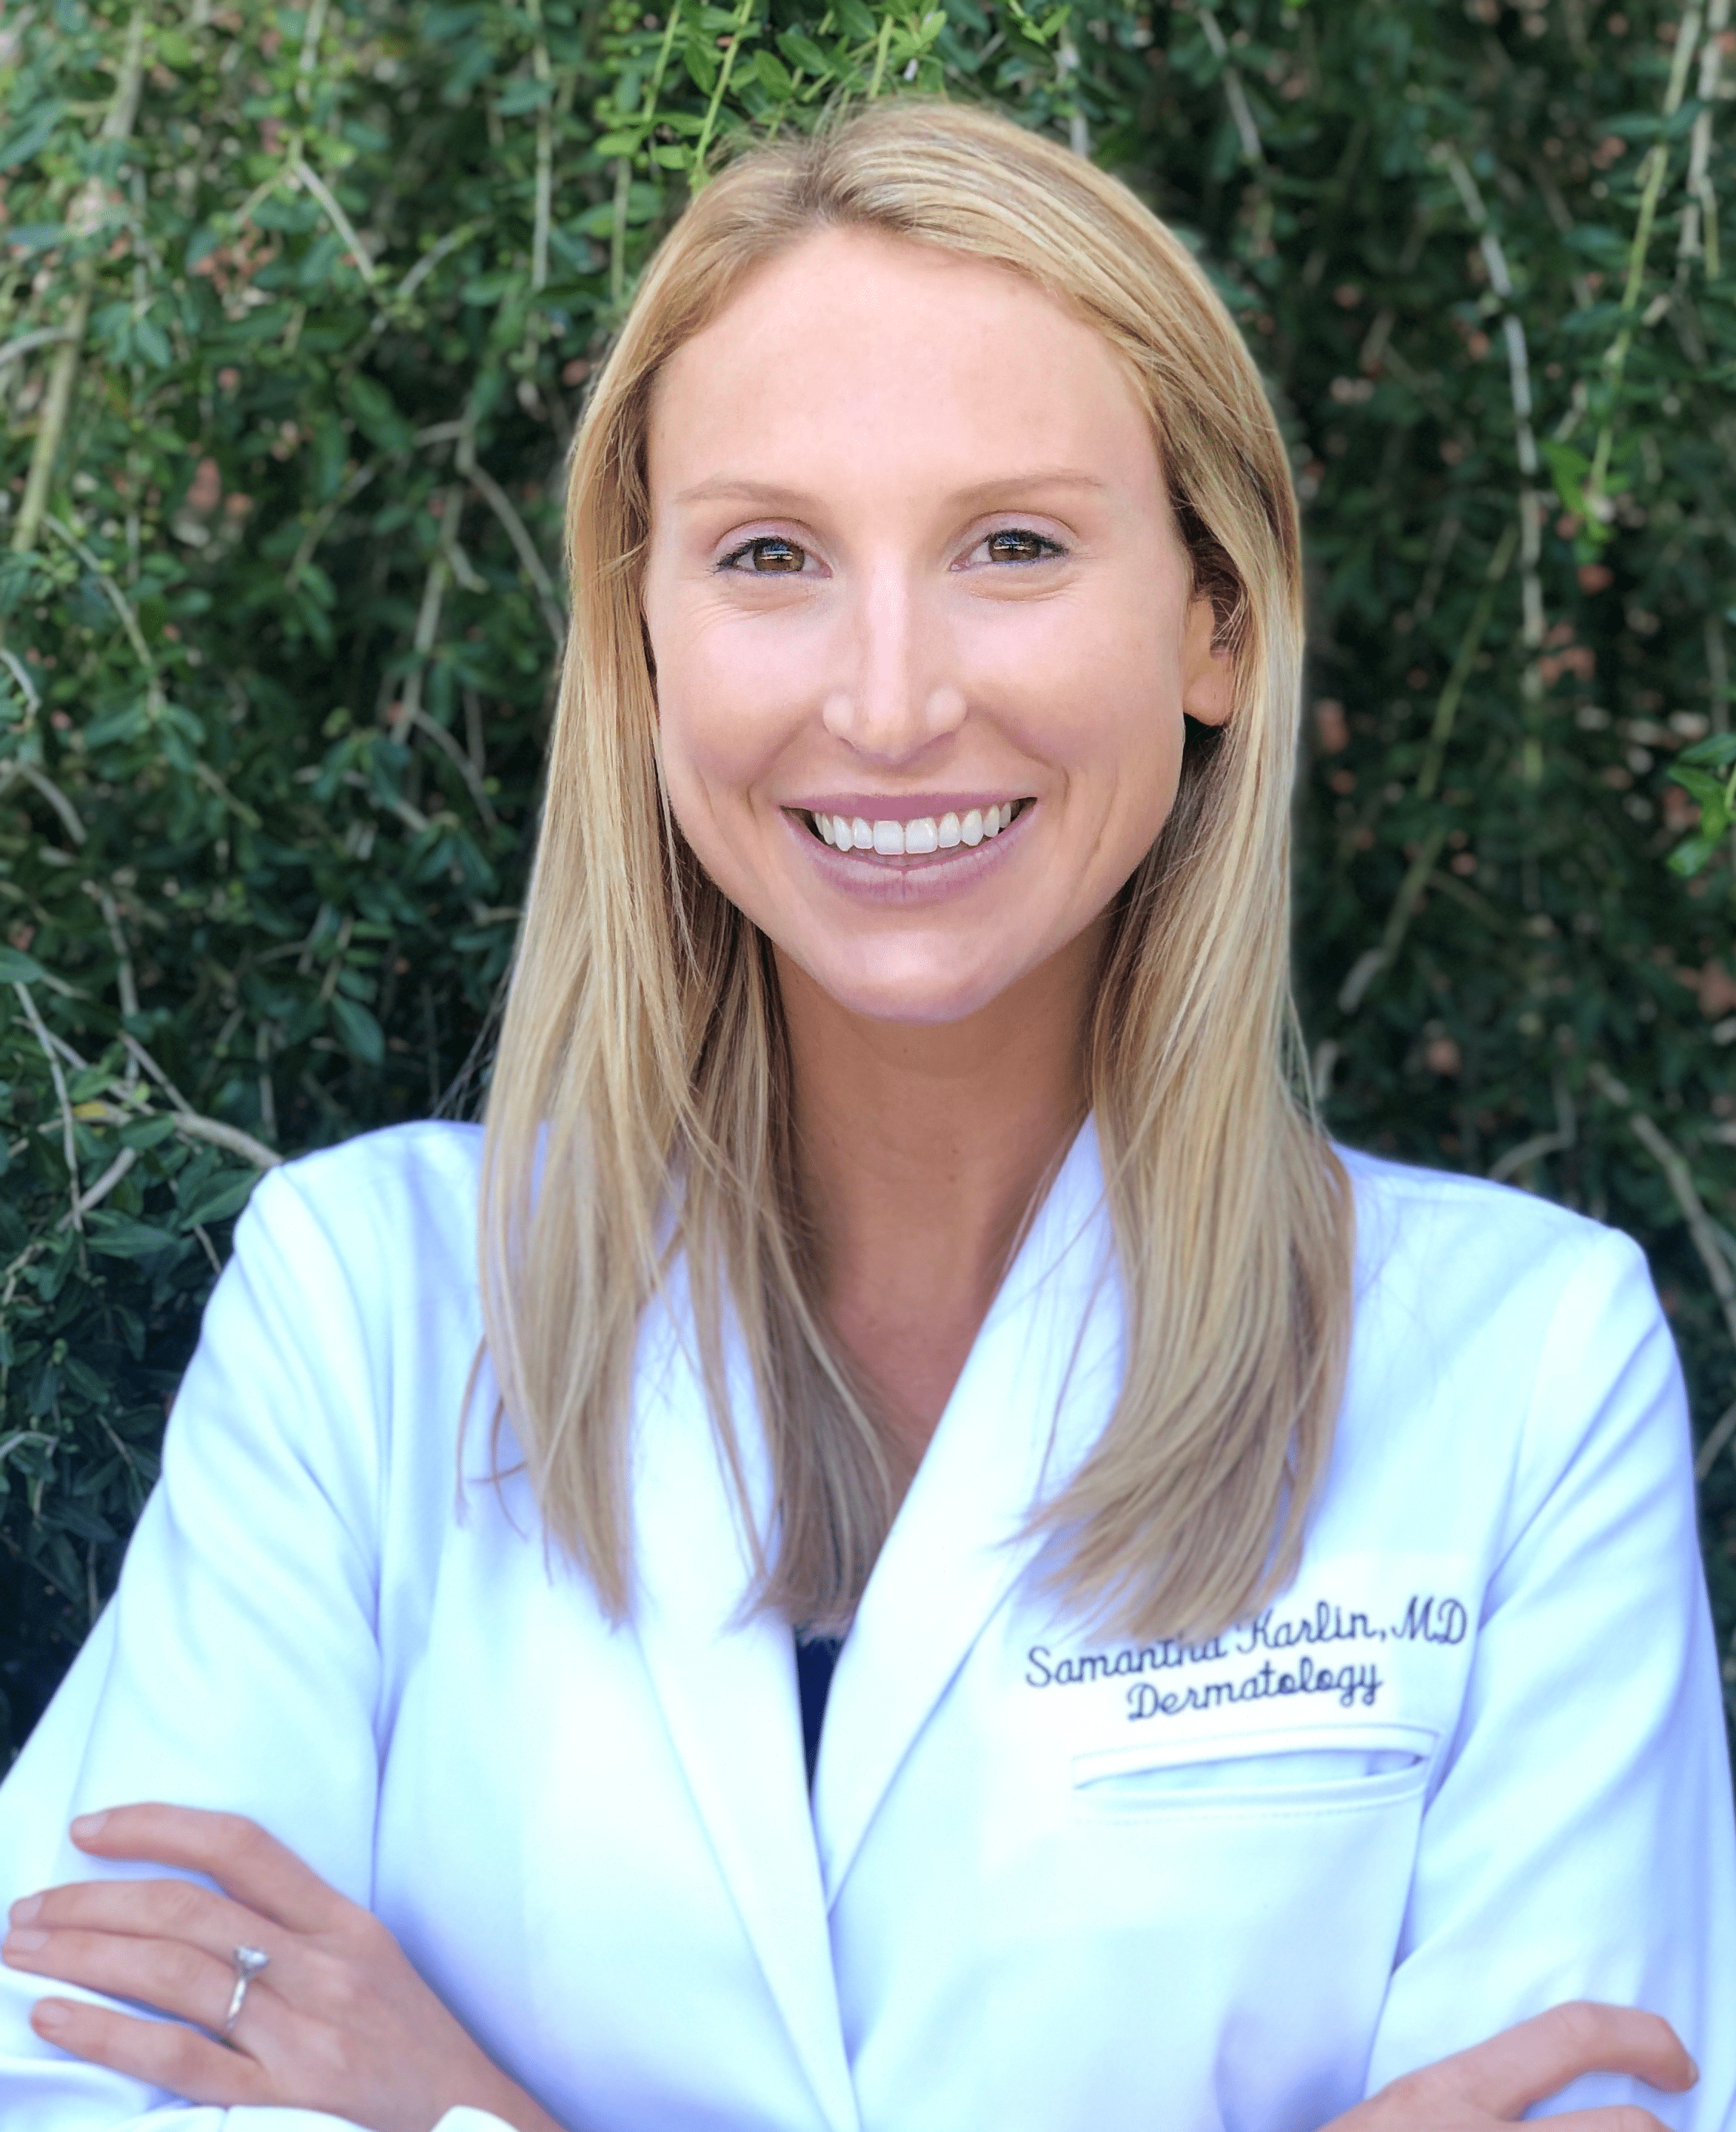 Samantha Karlin, MD